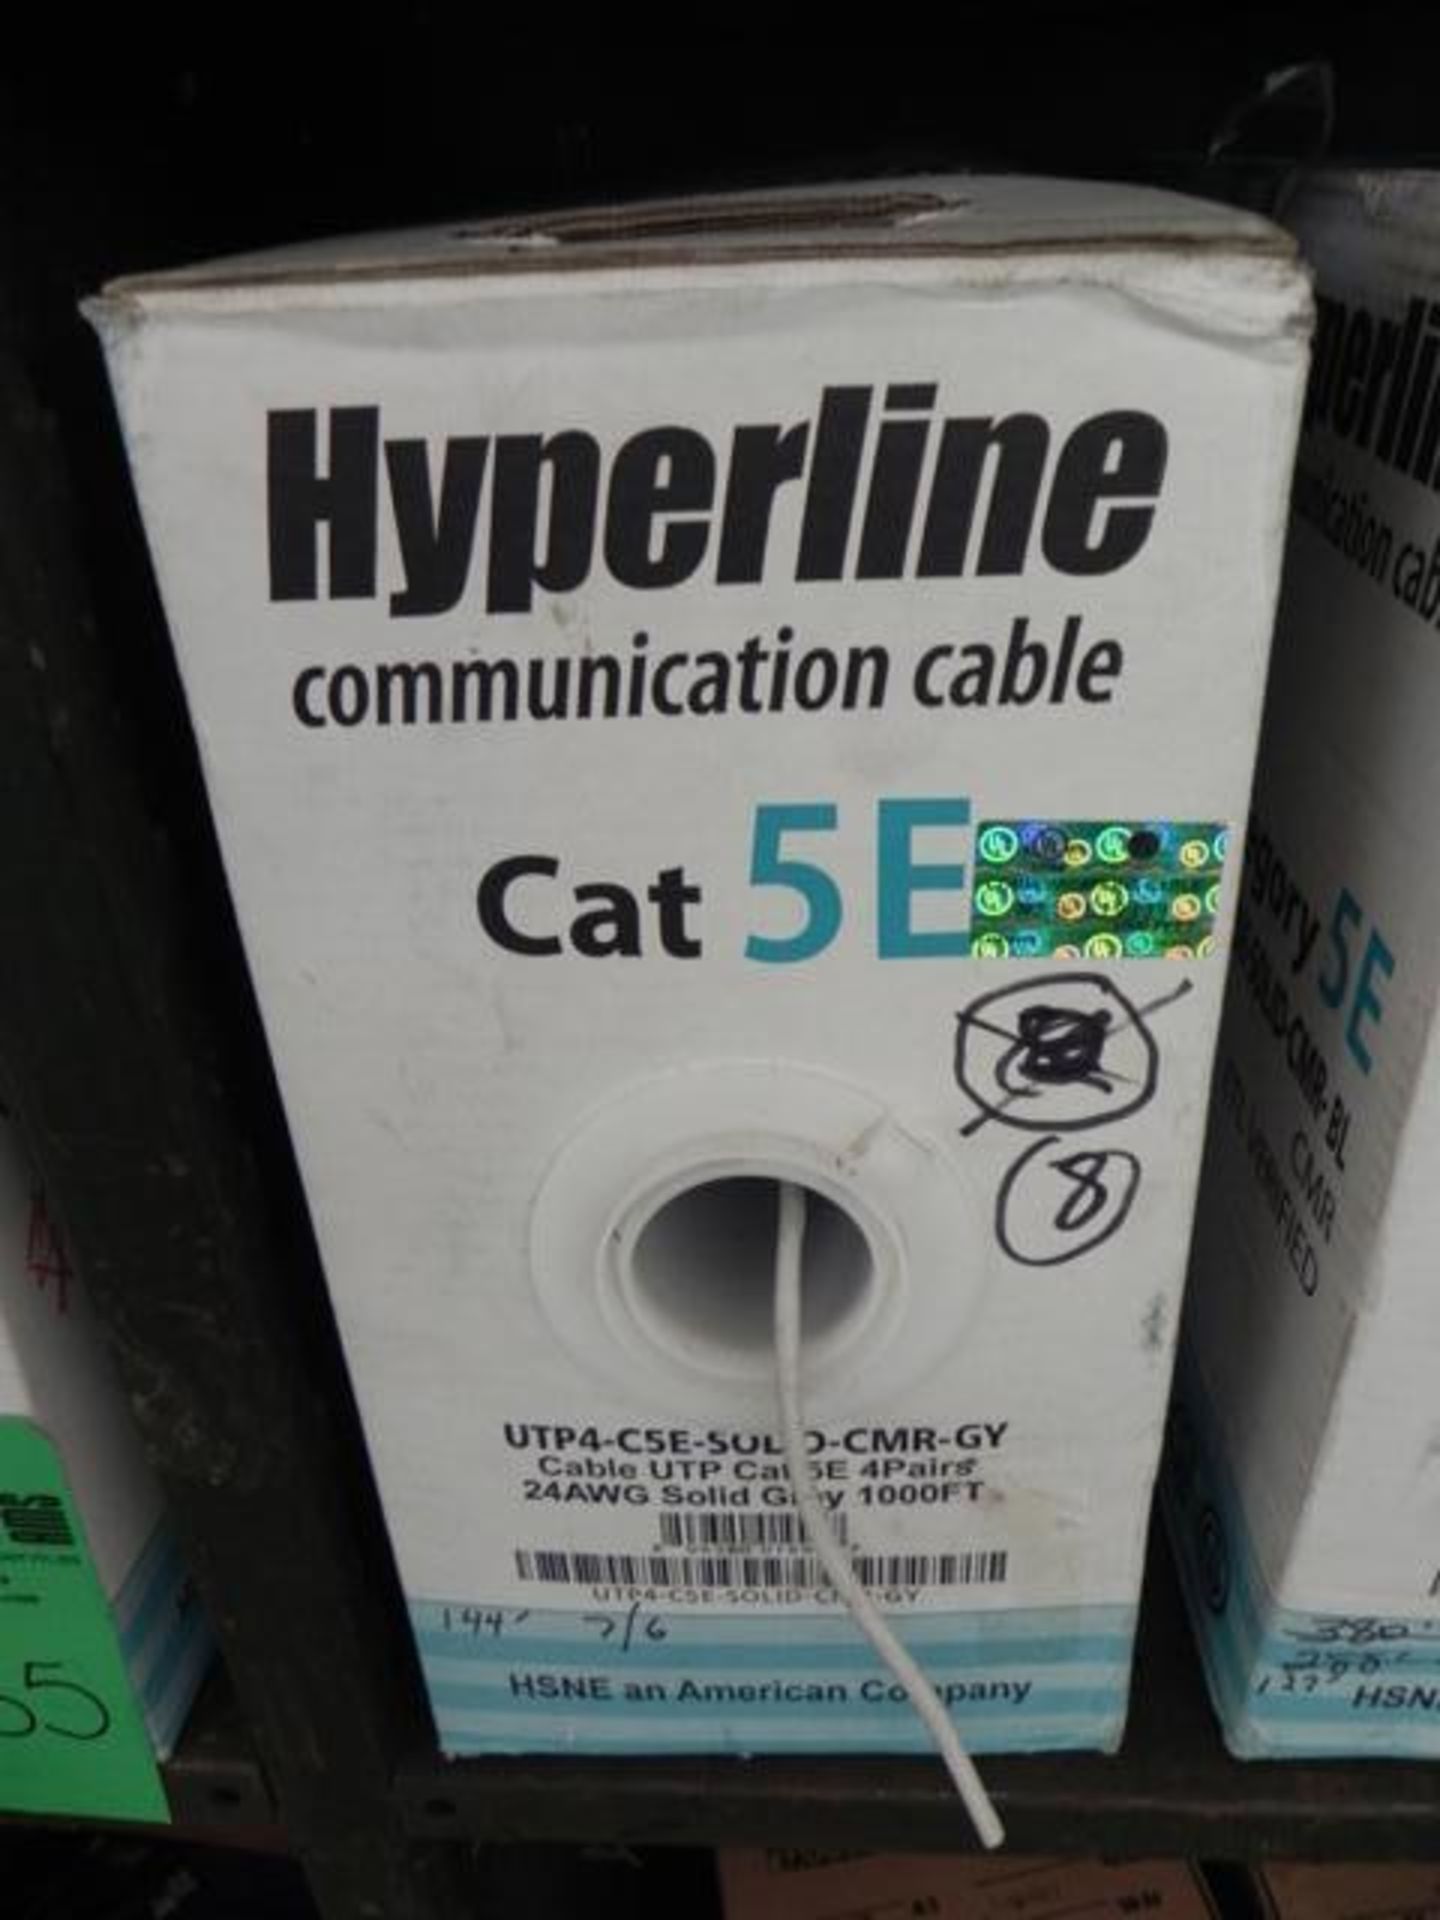 Hyperline Communication Cable Cat SEUTP4 - CSE - SOLID - CPM 2 BL 2/GV, CMP ETL verified 4000 FT - Bild 5 aus 5